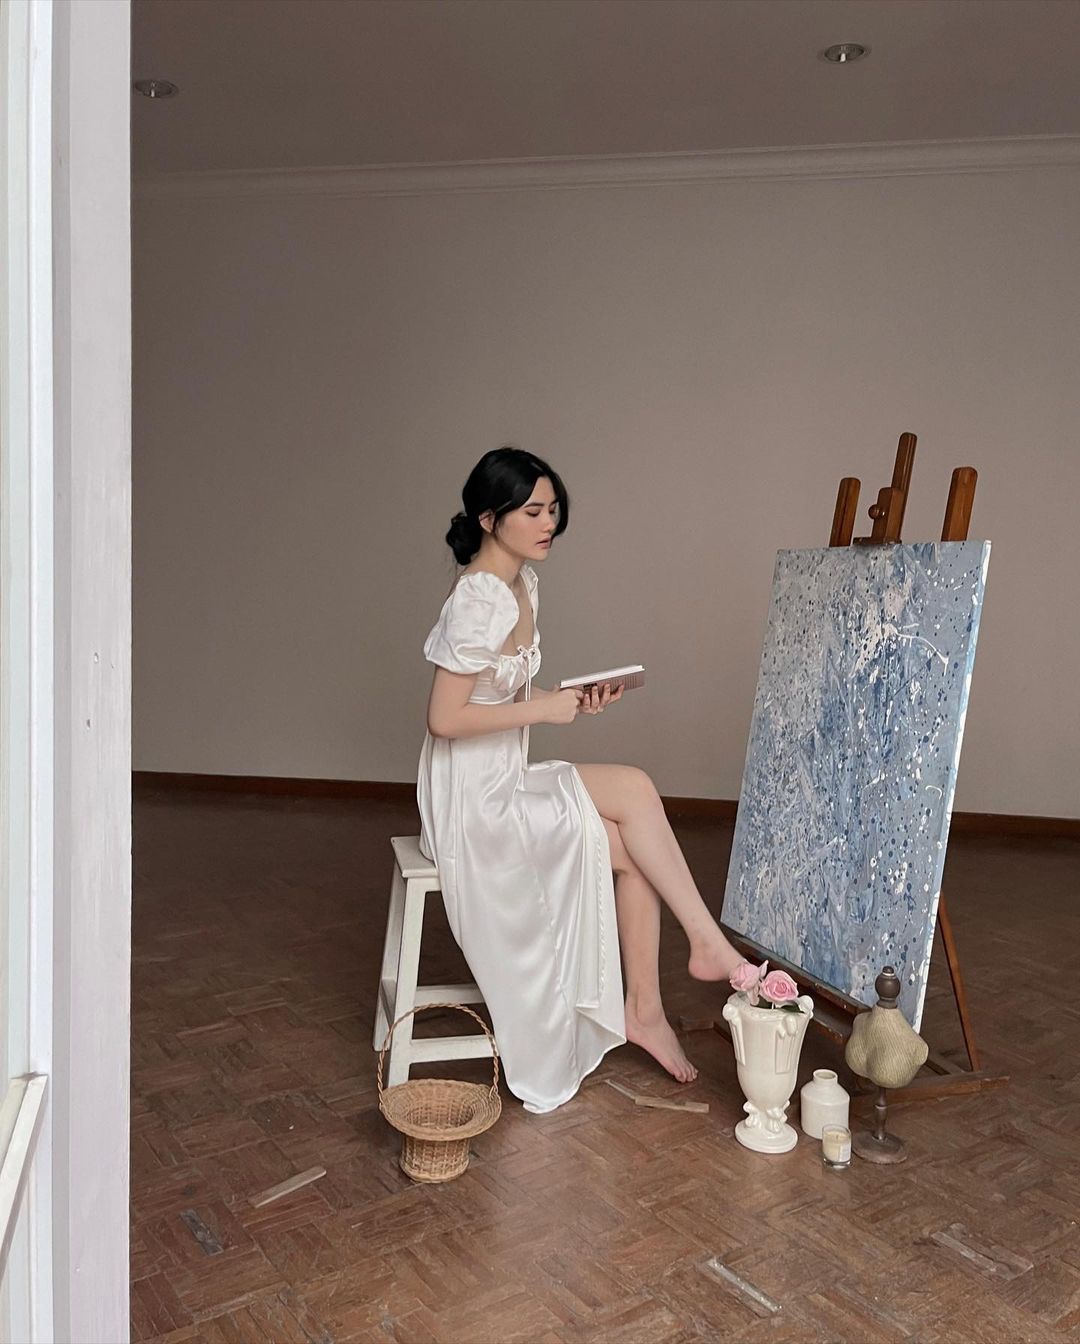 穿著 the.lookbook.select 設計的 Adella 連身裙的女人坐在凳子上，在鋪著木地板的明亮房間裡在畫布上作畫。